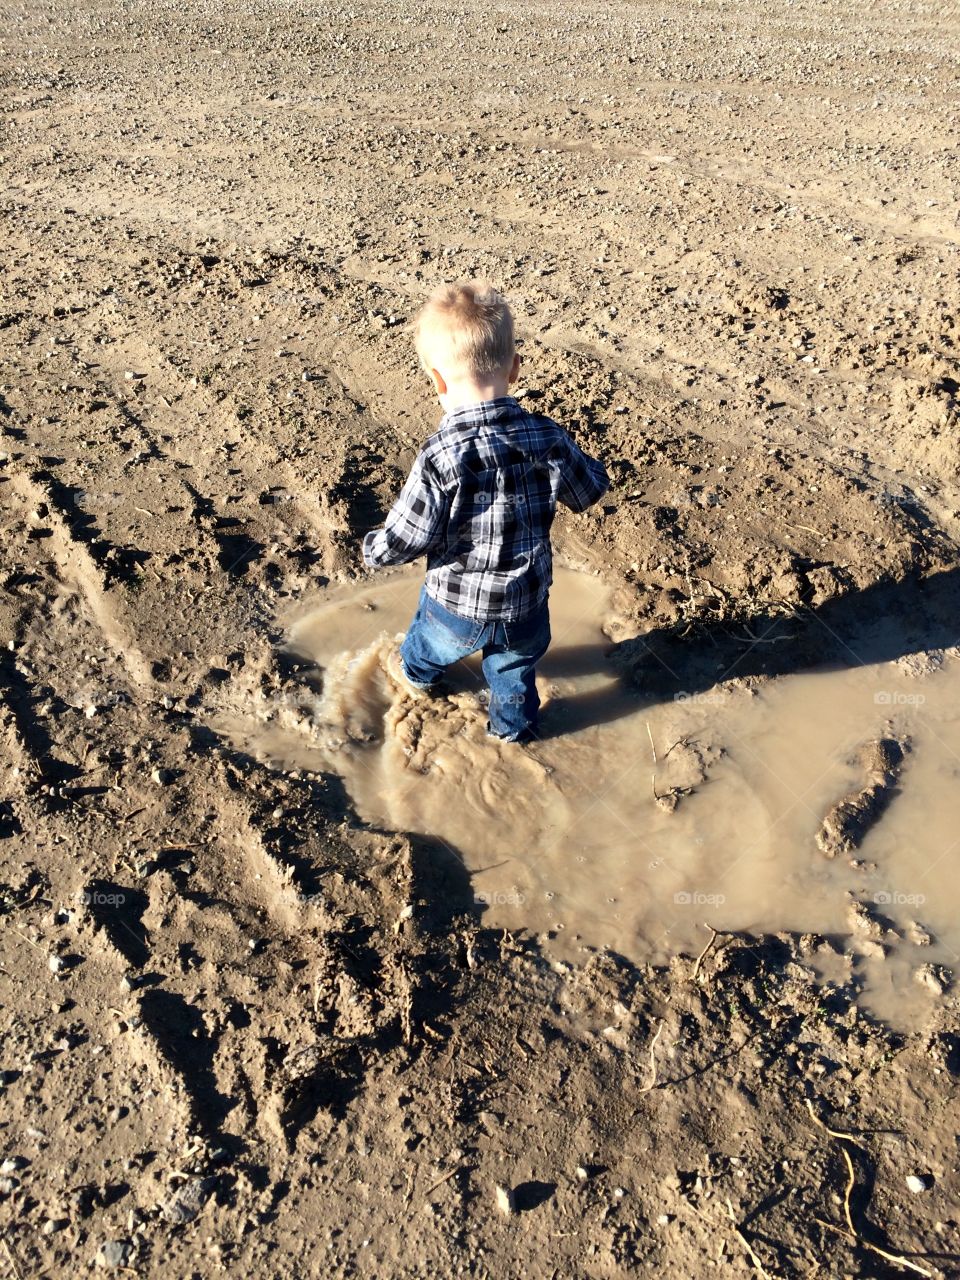 Boy in Mud